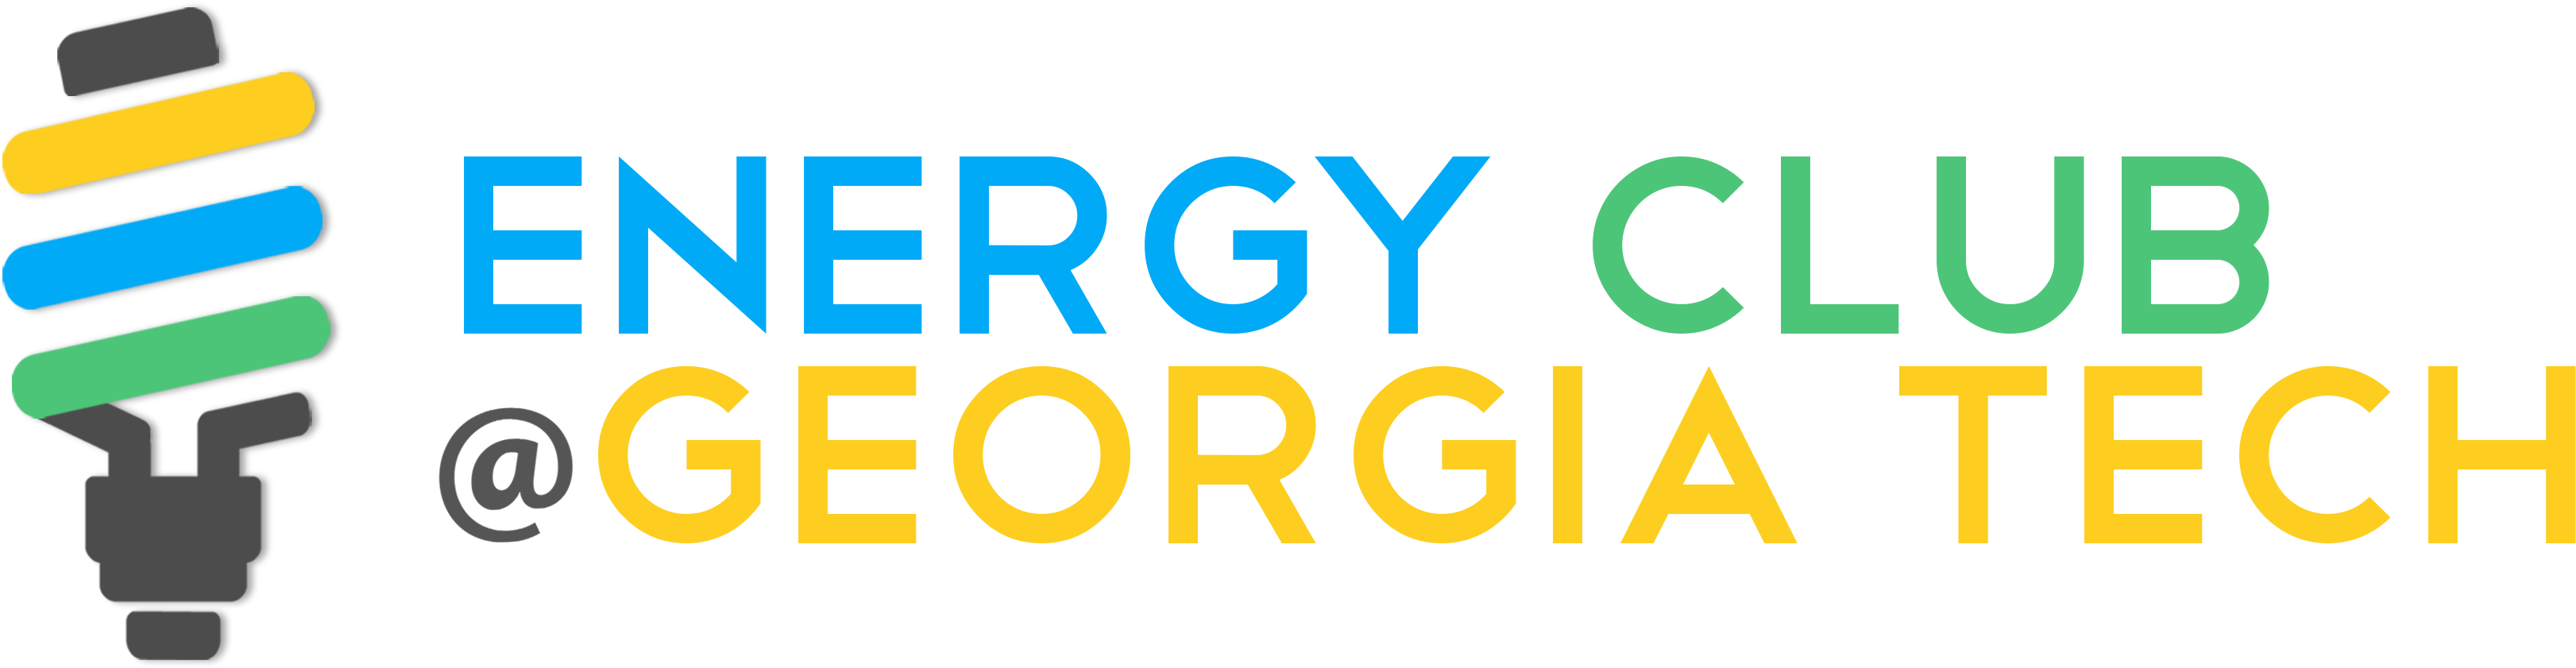 Energy Club Georgia Tech Logo